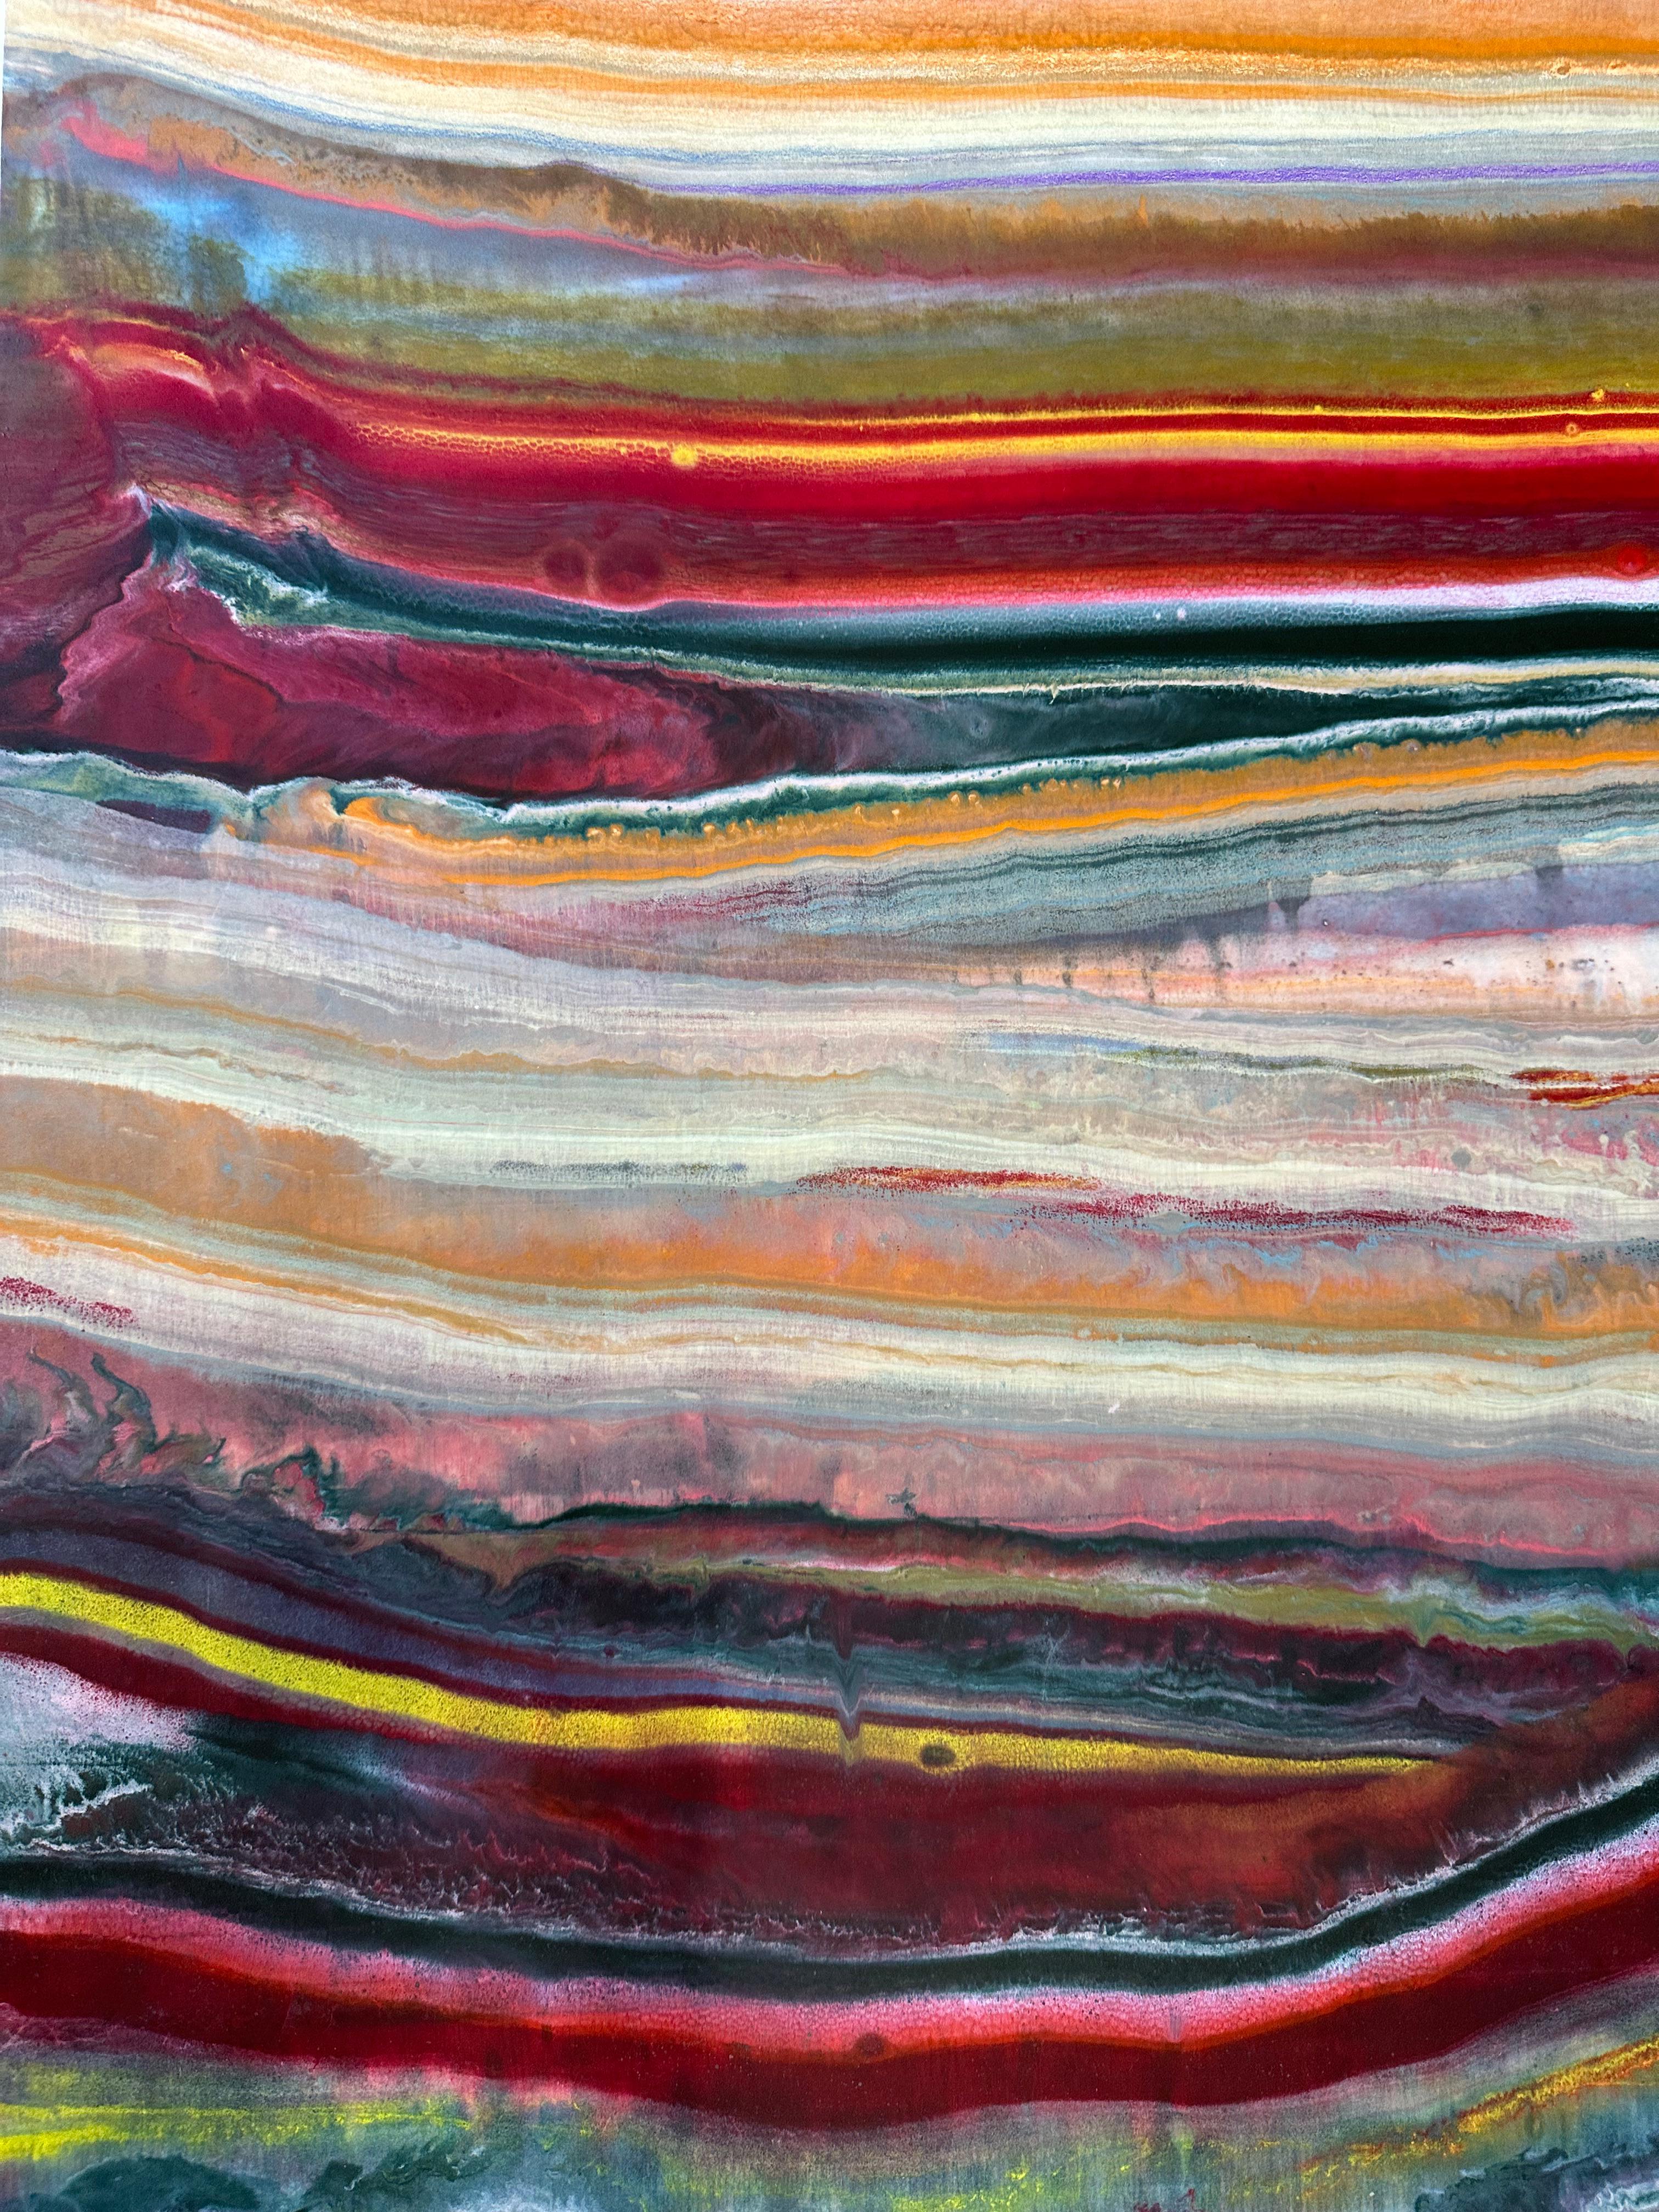 Talking to Rocks 19 de Laura Moriarty est un monotype encaustique multicolore sur papier kozo. Des couches de cire d'abeille pigmentée sur du papier léger créent une composition ondulante suggérant des couches de la croûte terrestre et des